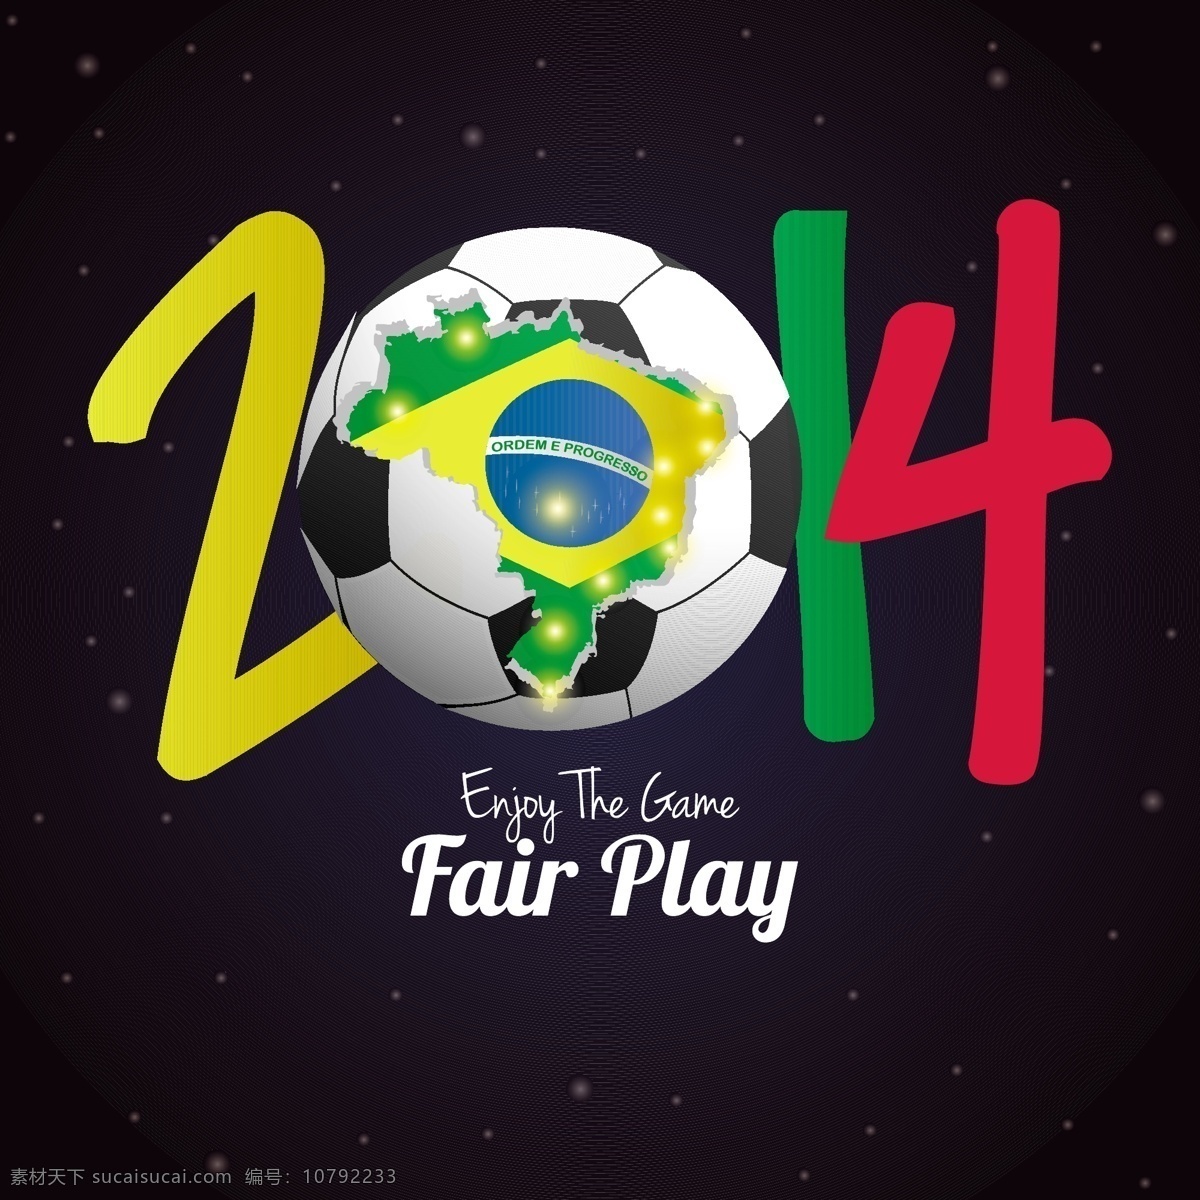 2014 足球 世界杯 海报 模板下载 巴西 背景 体育运动 生活百科 矢量素材 黑色